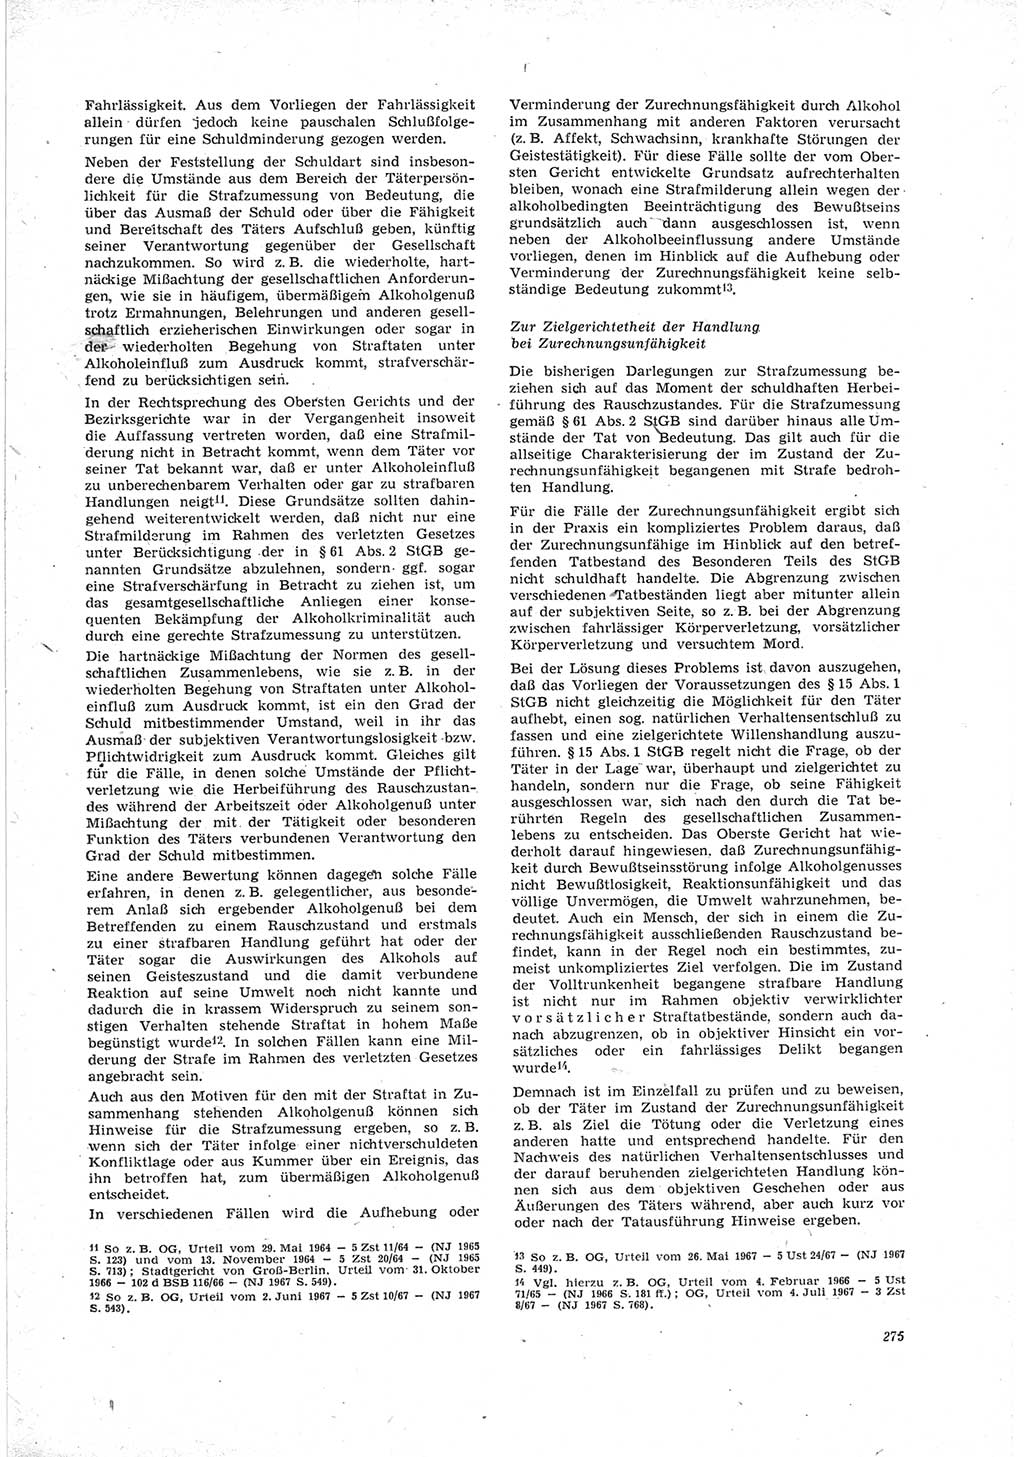 Neue Justiz (NJ), Zeitschrift für Recht und Rechtswissenschaft [Deutsche Demokratische Republik (DDR)], 23. Jahrgang 1969, Seite 275 (NJ DDR 1969, S. 275)